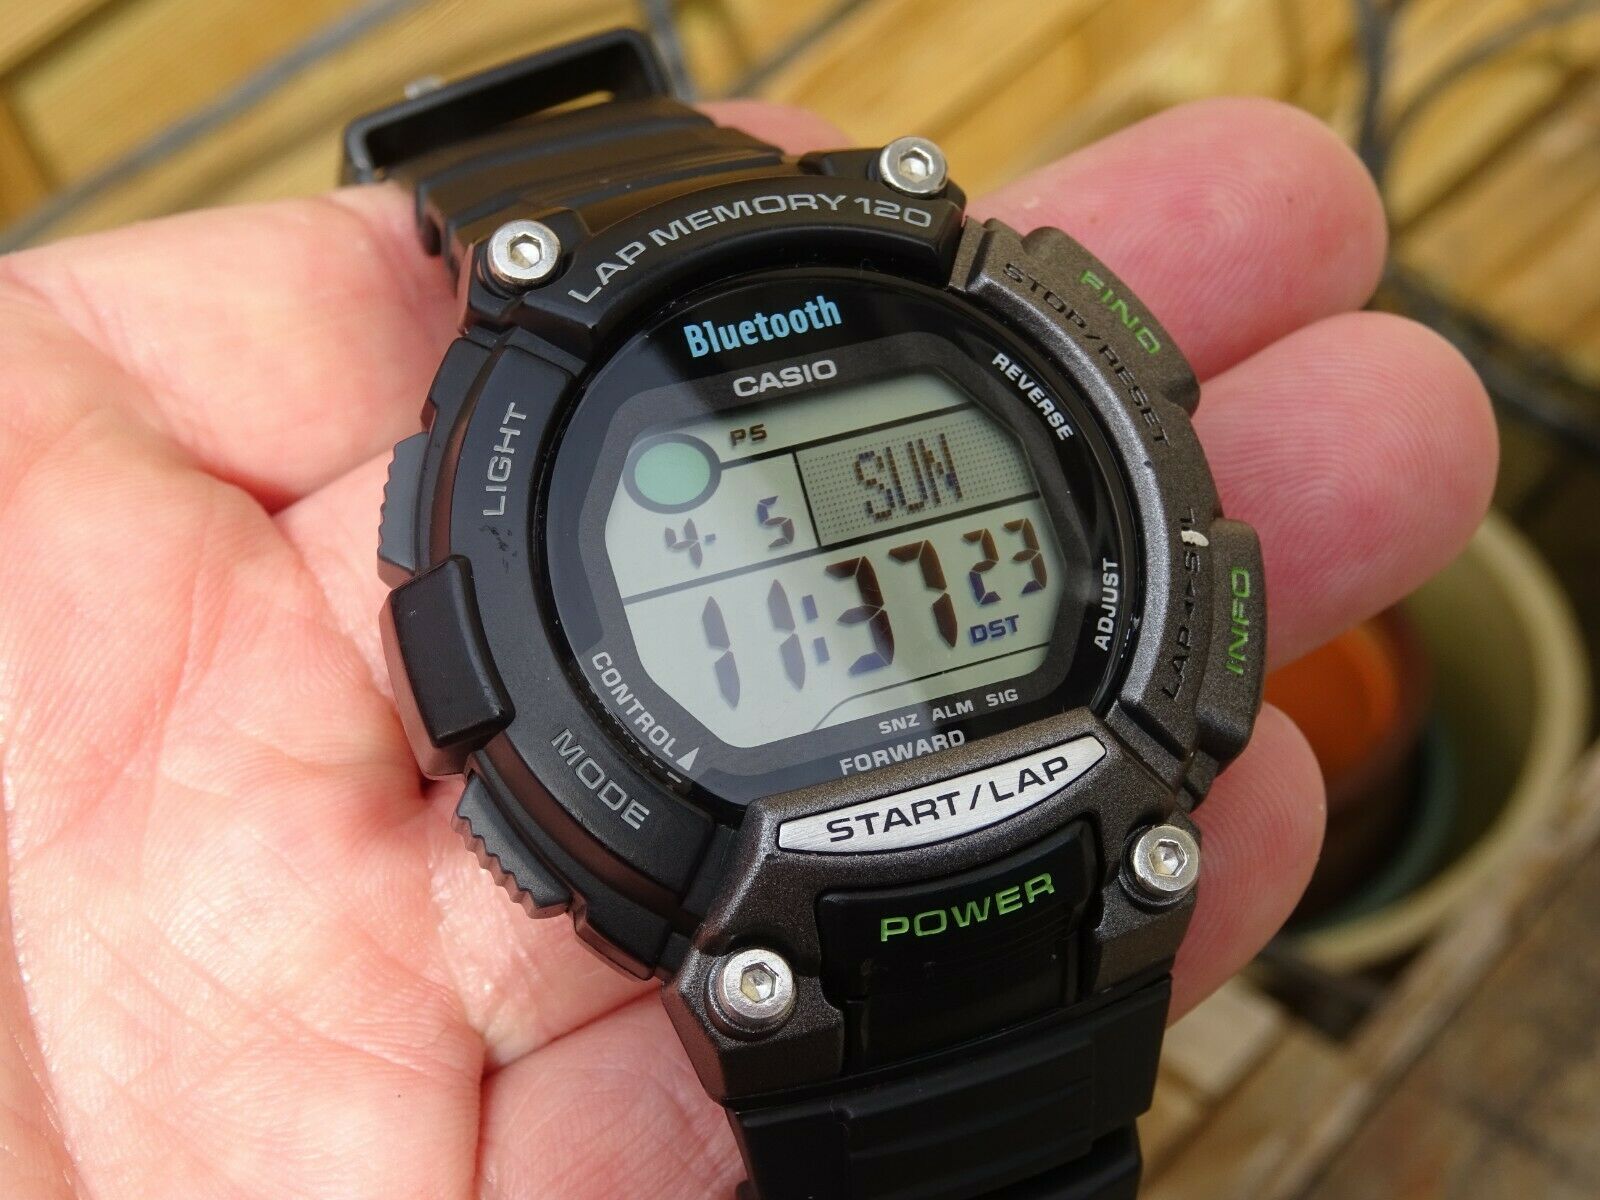 Casio STB-1000-1EF Bluetooth Sports watch |